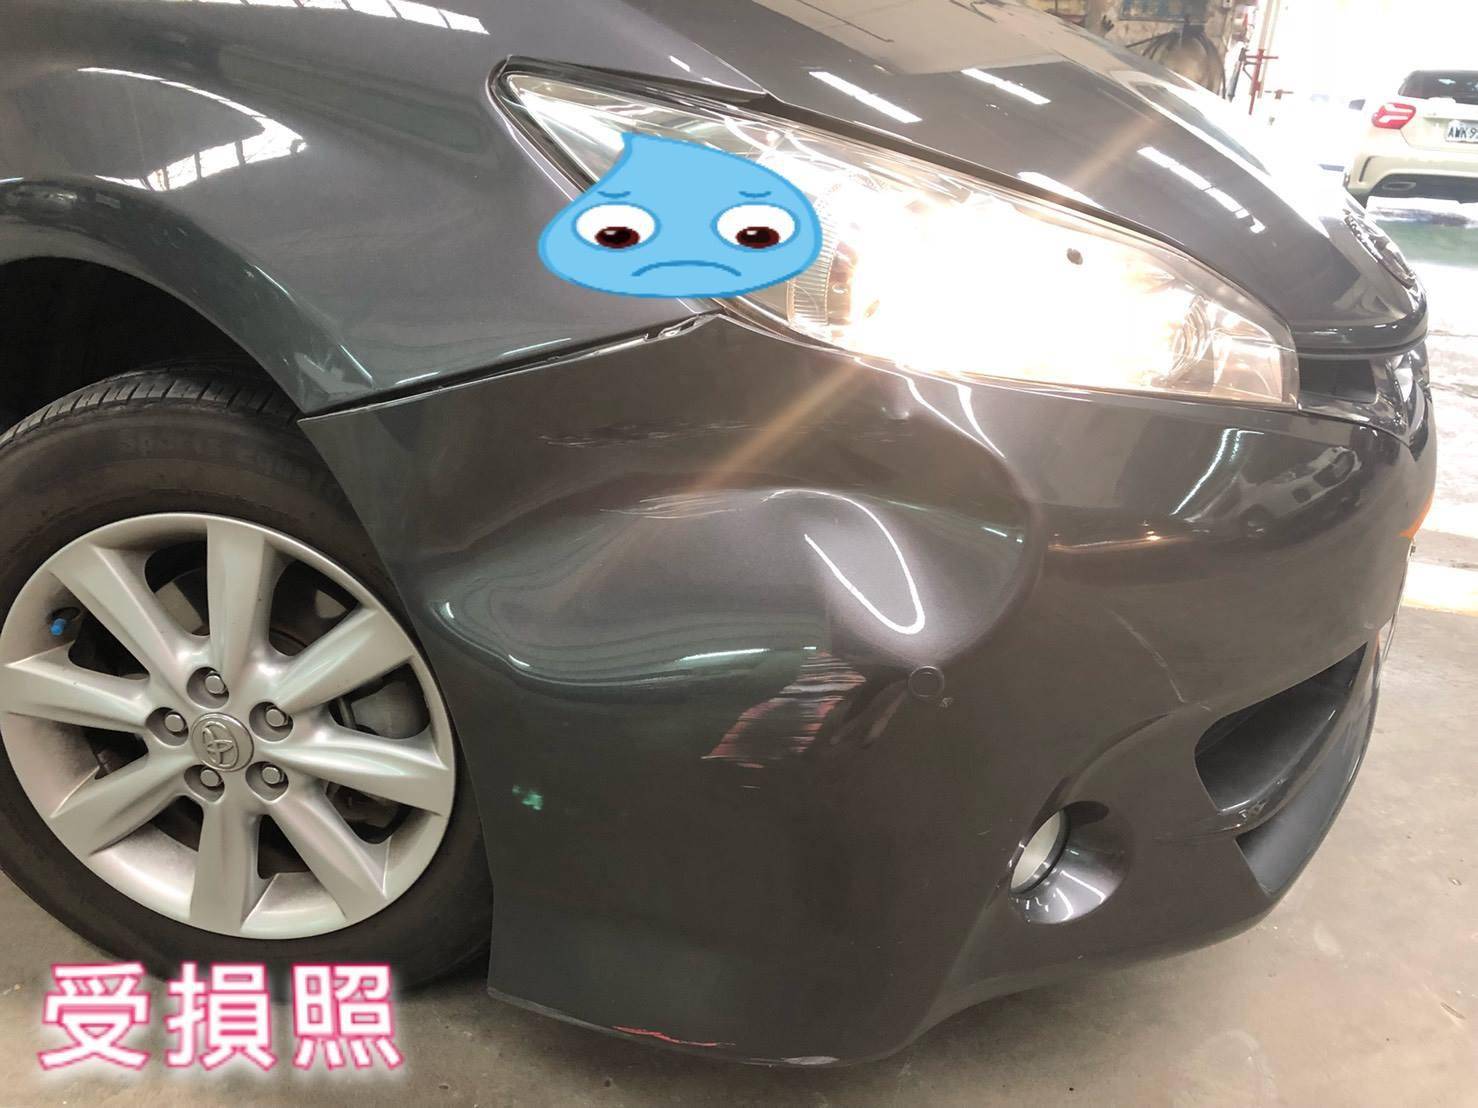 豐田/TOYOTA WISH/車輛鈑金烤漆修復#前保桿凹損嚴重#修復回原狀#高水準的品質表現